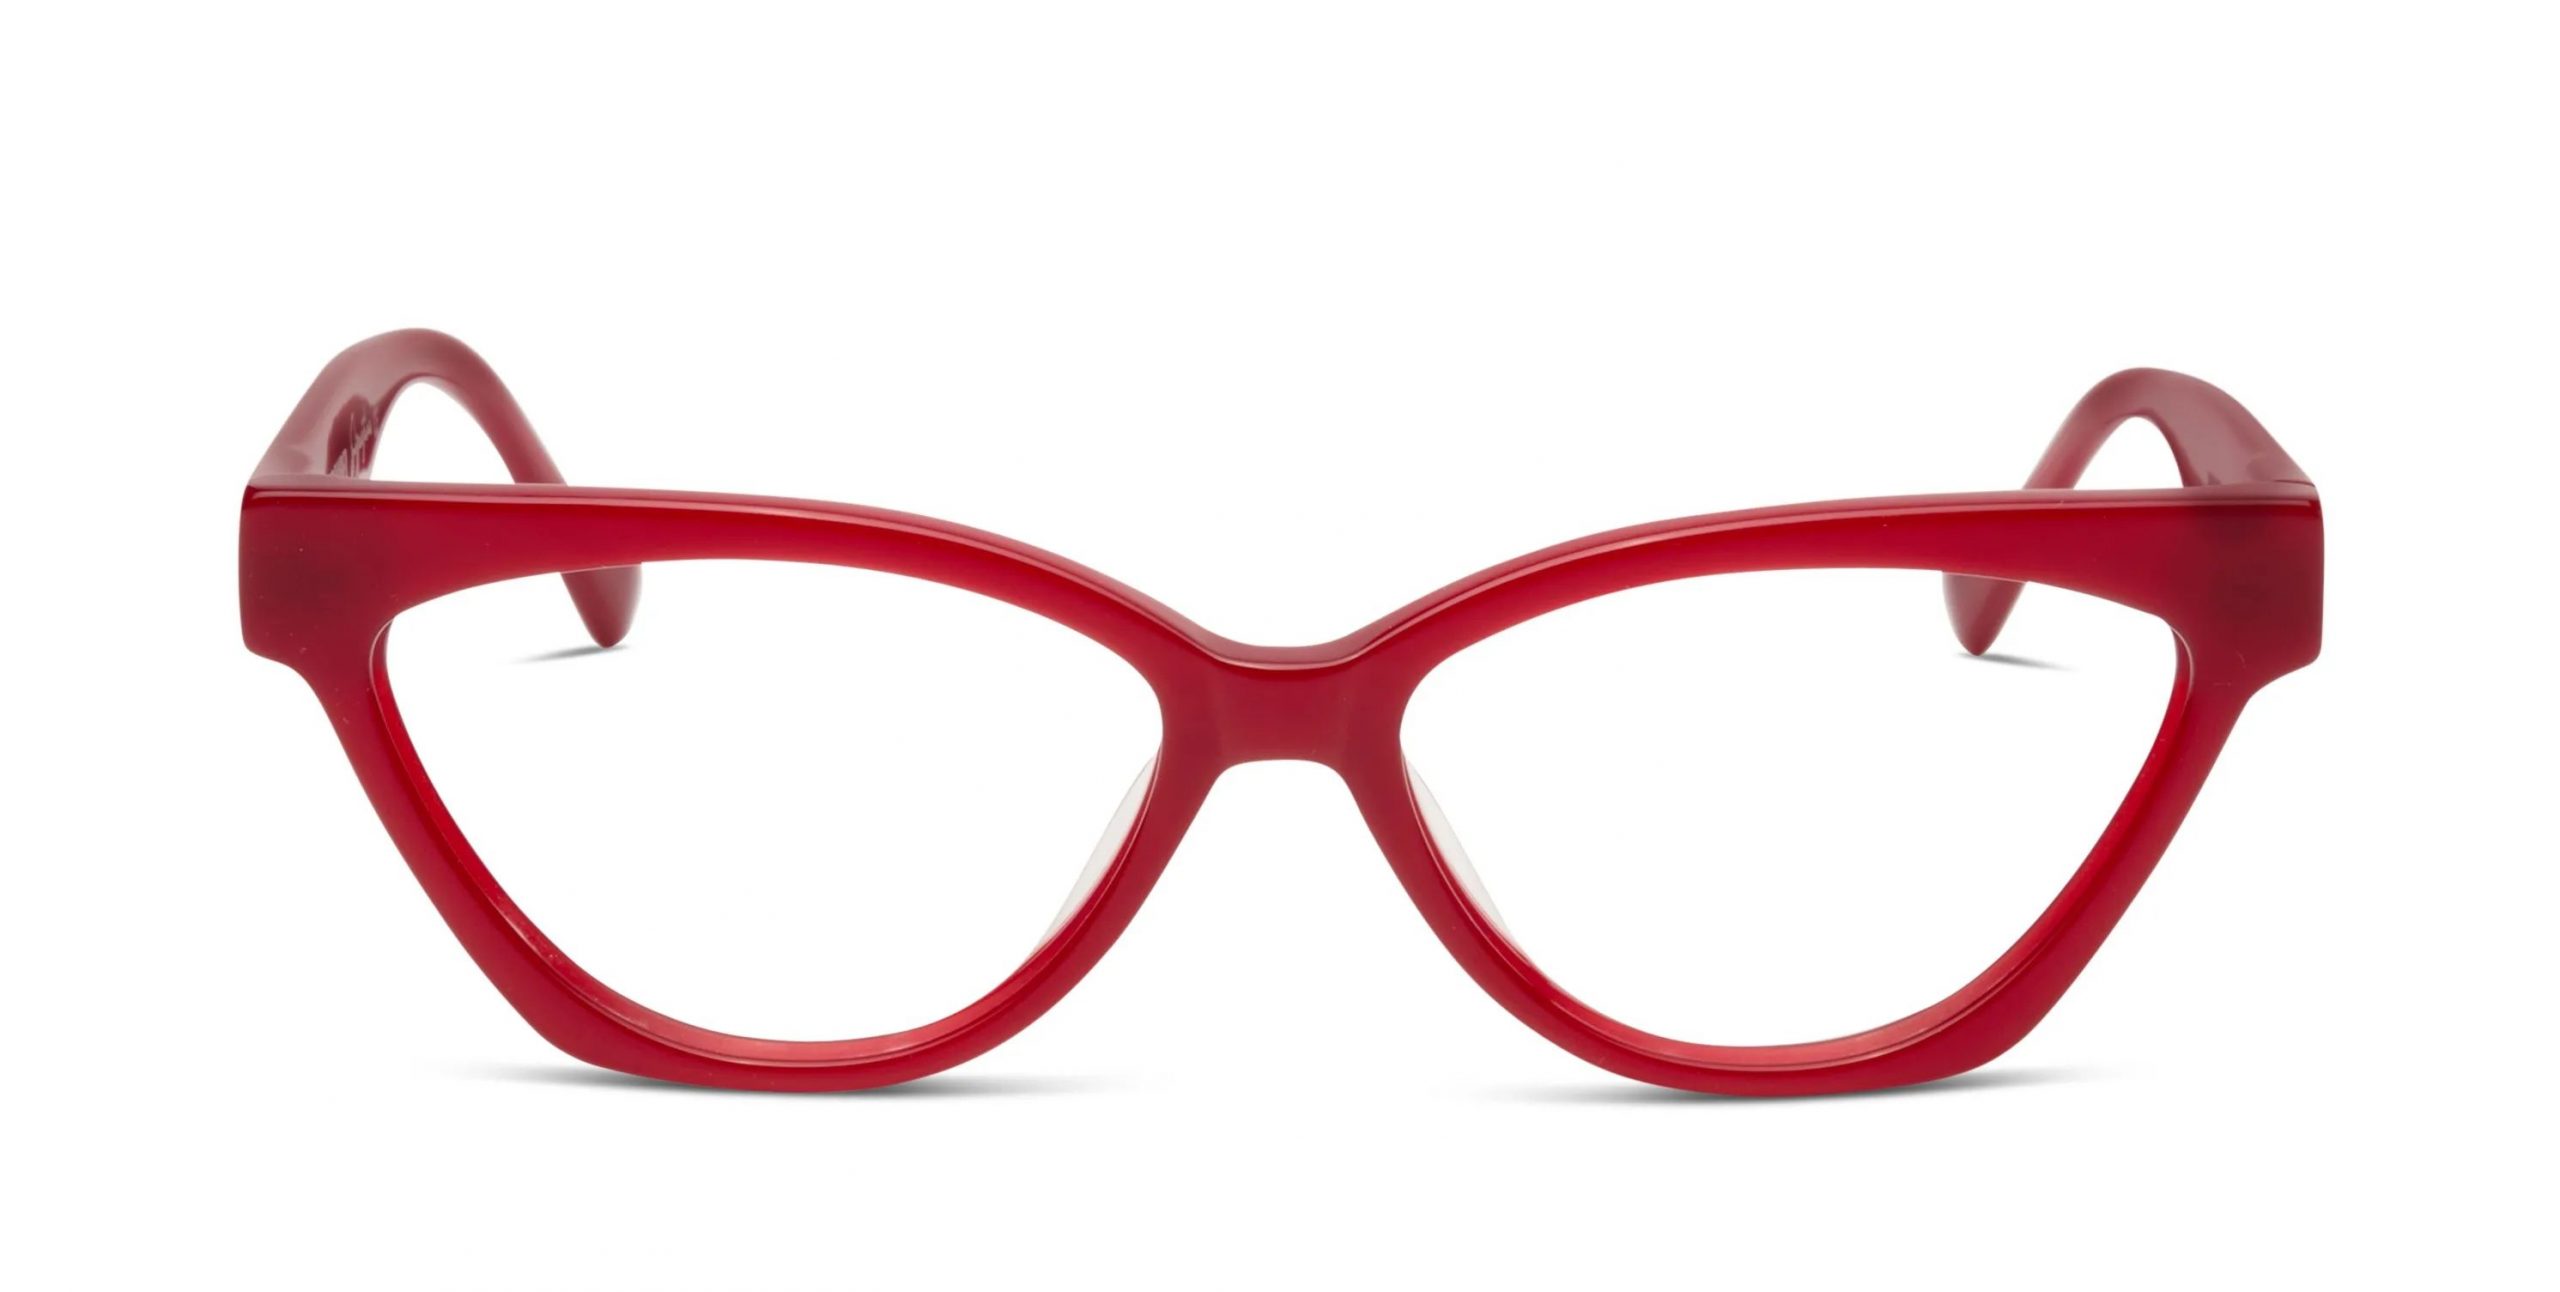 New Kreuzbergkinder Glasses at David Shanahan Optometrists